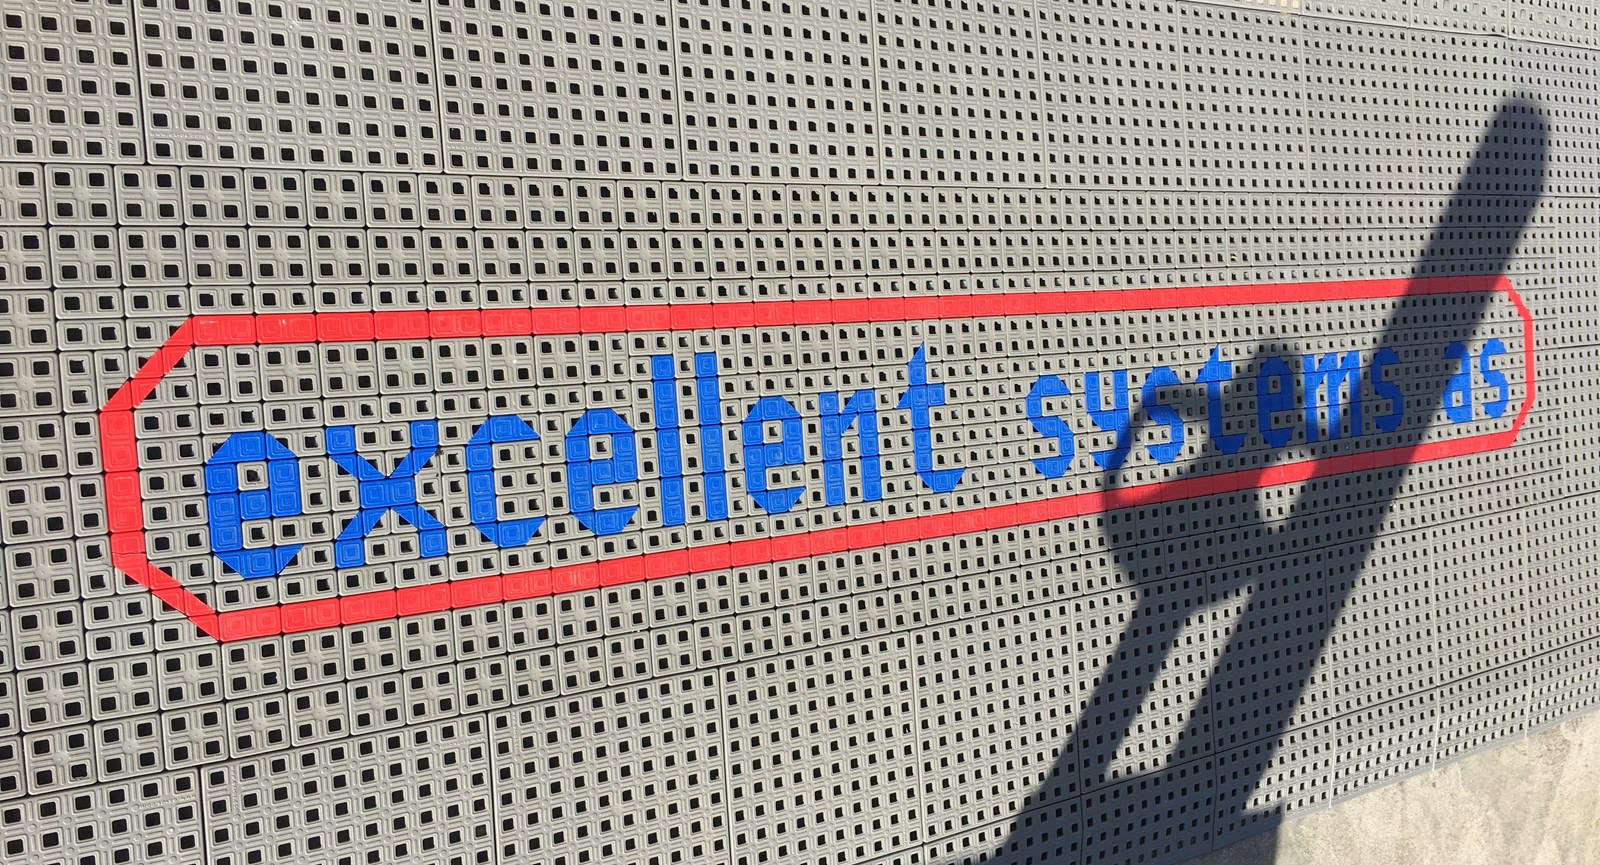 Et aflangt stykke gråt skridsikkert gulv med firmanavnet 'Excellent Systems' skrevet med lyseblå bogstaver.